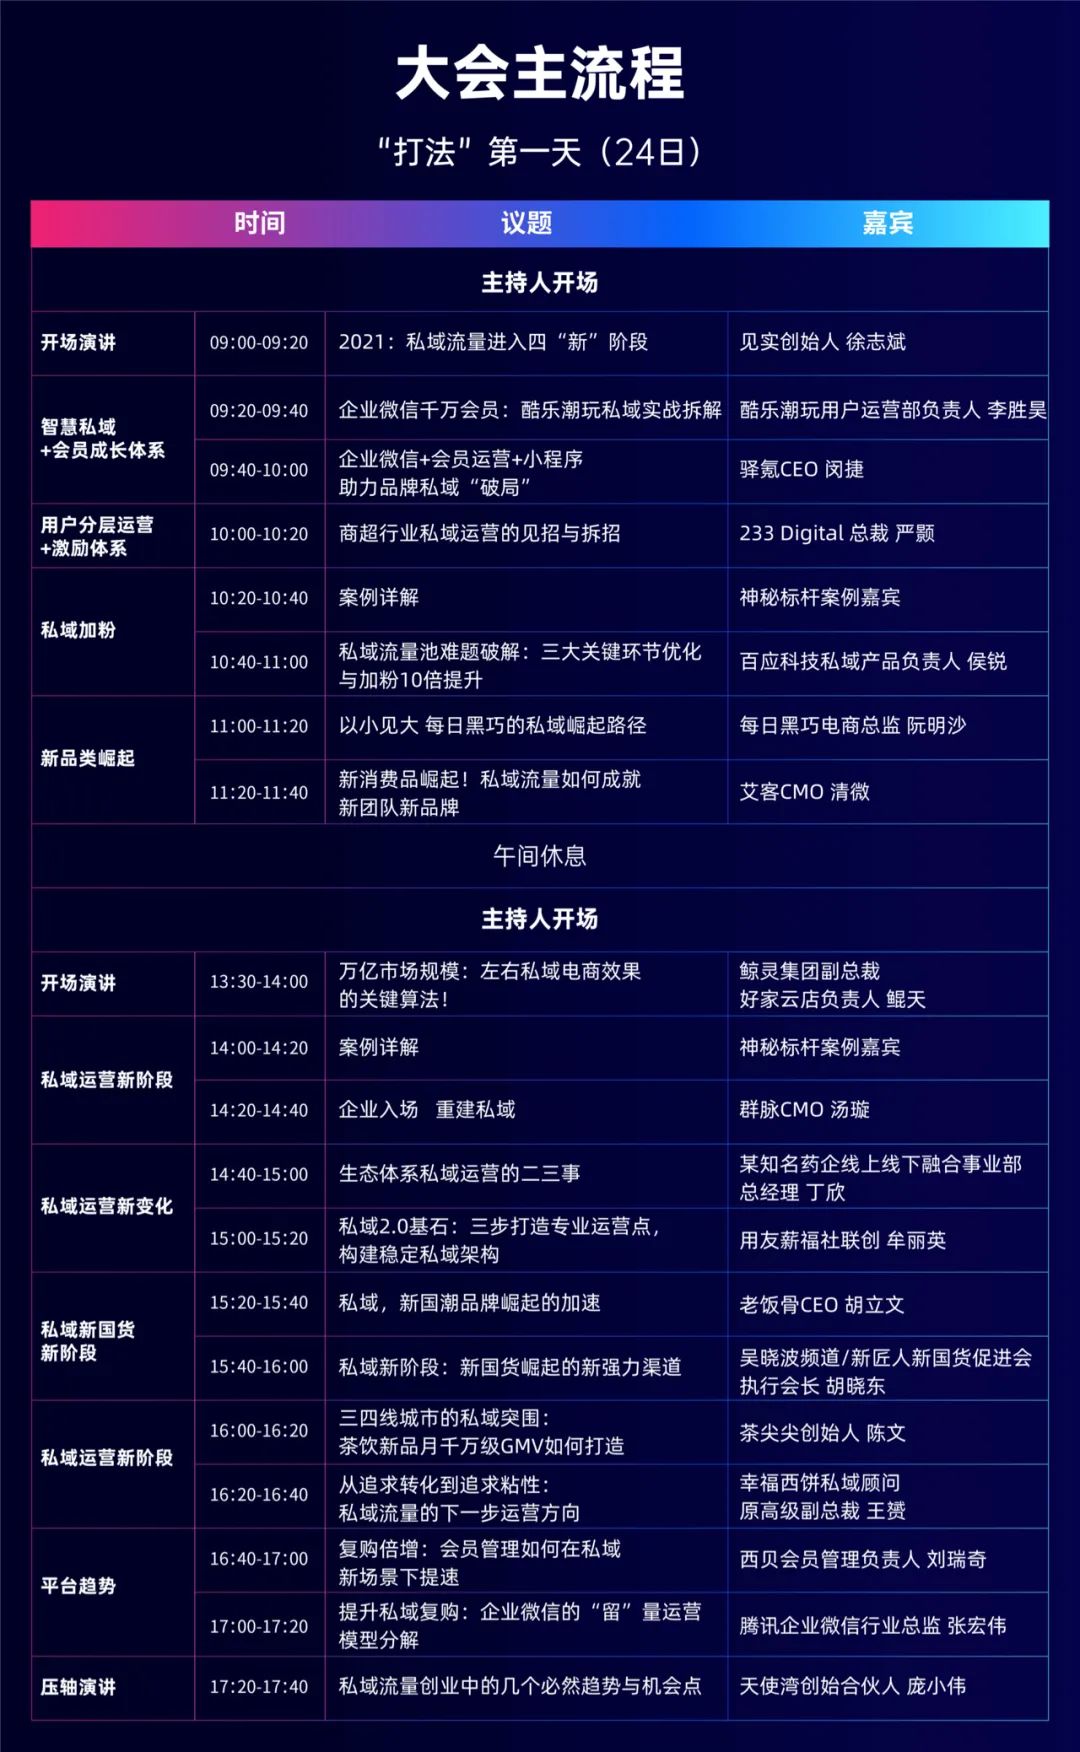 定了！50位高手现场拆解25组知名私域案例，杭州这场大会超猛！